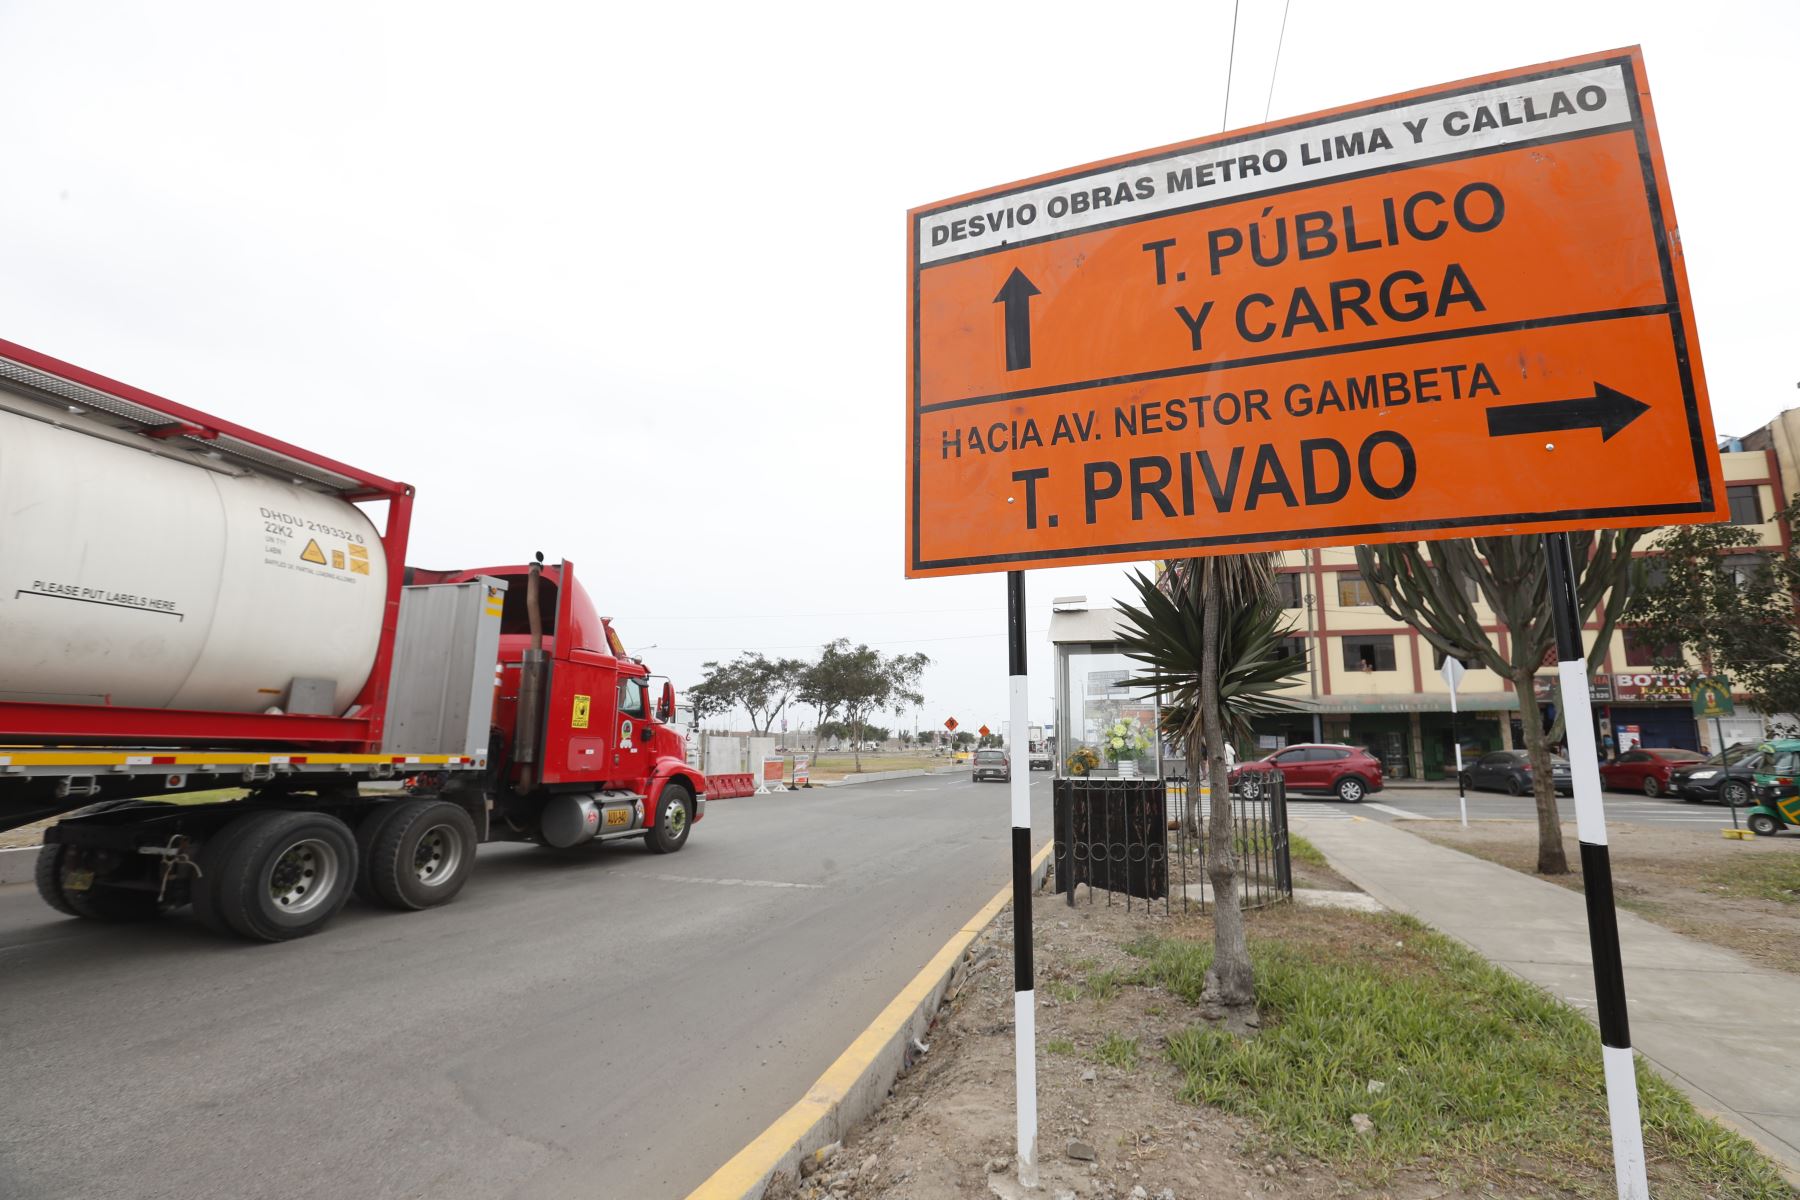 Se inició el plan de desvíos vehiculares en la Av. Faucett en el Callao debido a la ejecución de obras en el ramal de la Línea 4 del Metro de Lima y Callao. Foto: ANDINA/Daniel Bracamonte